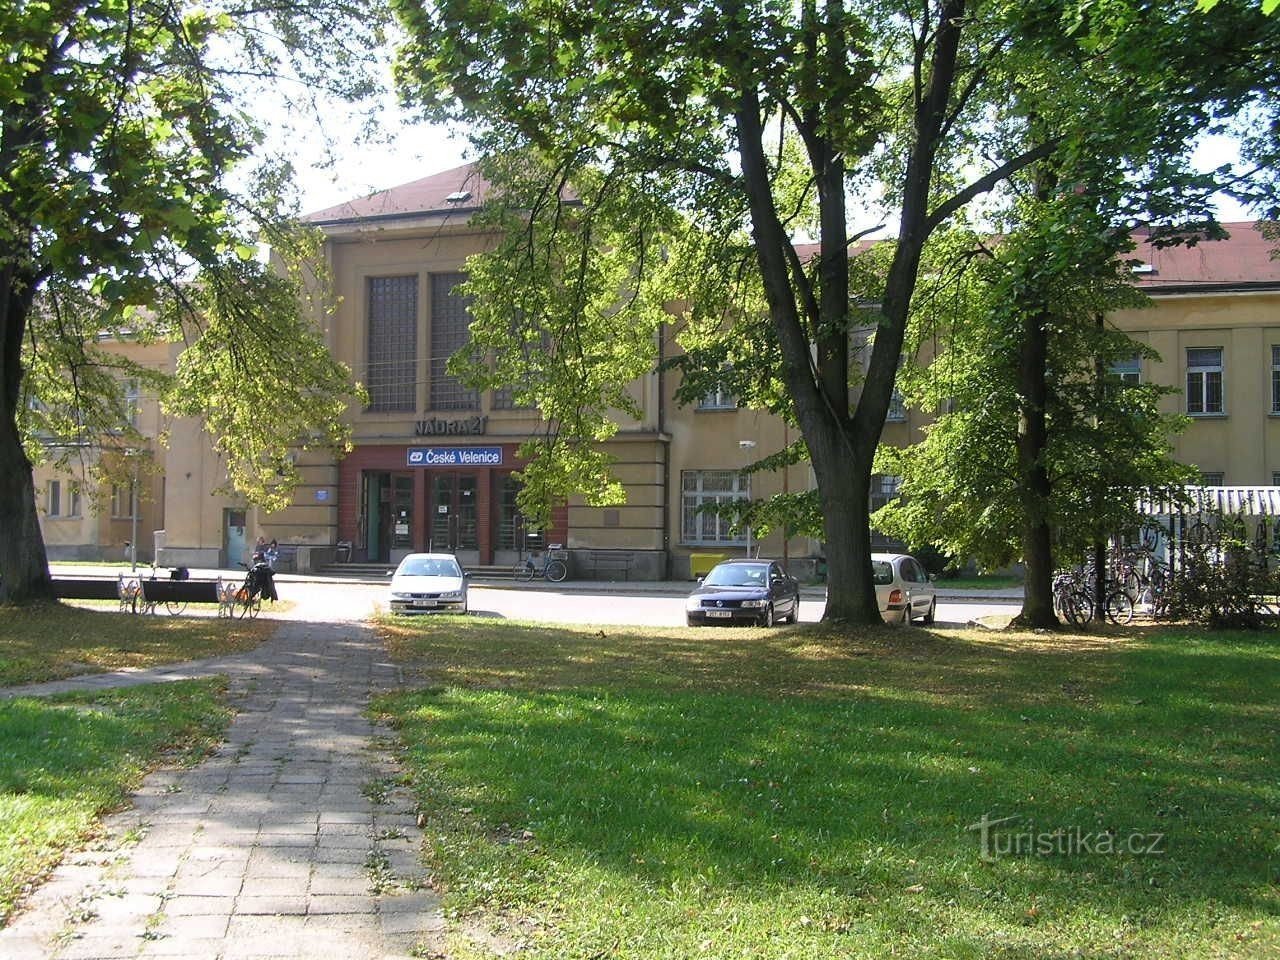 Tågstationen i České Velenice